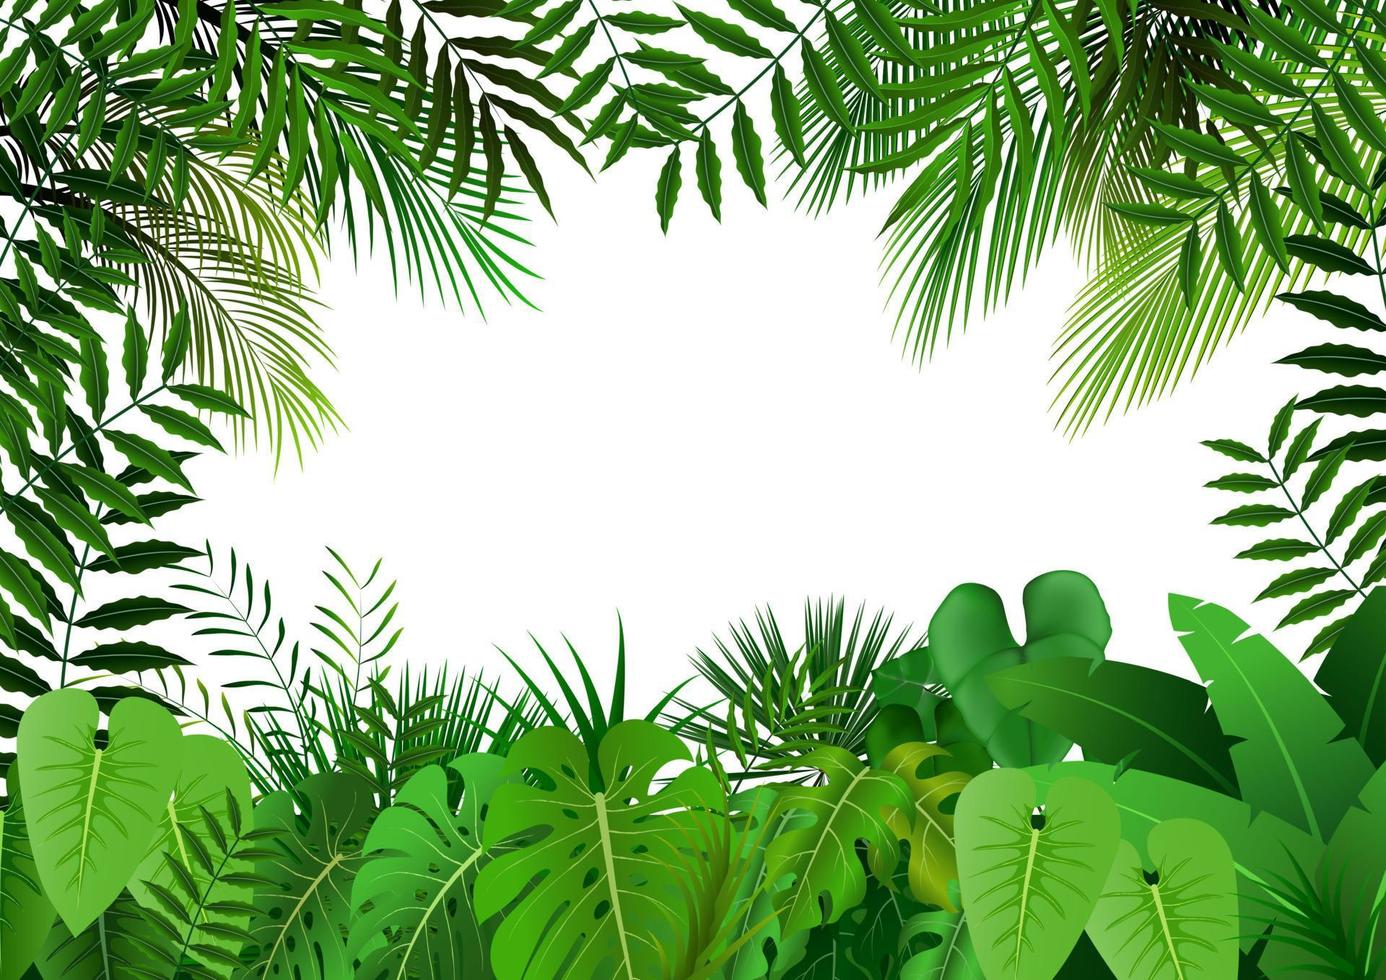 Dschungel auf weißem background.vector vektor